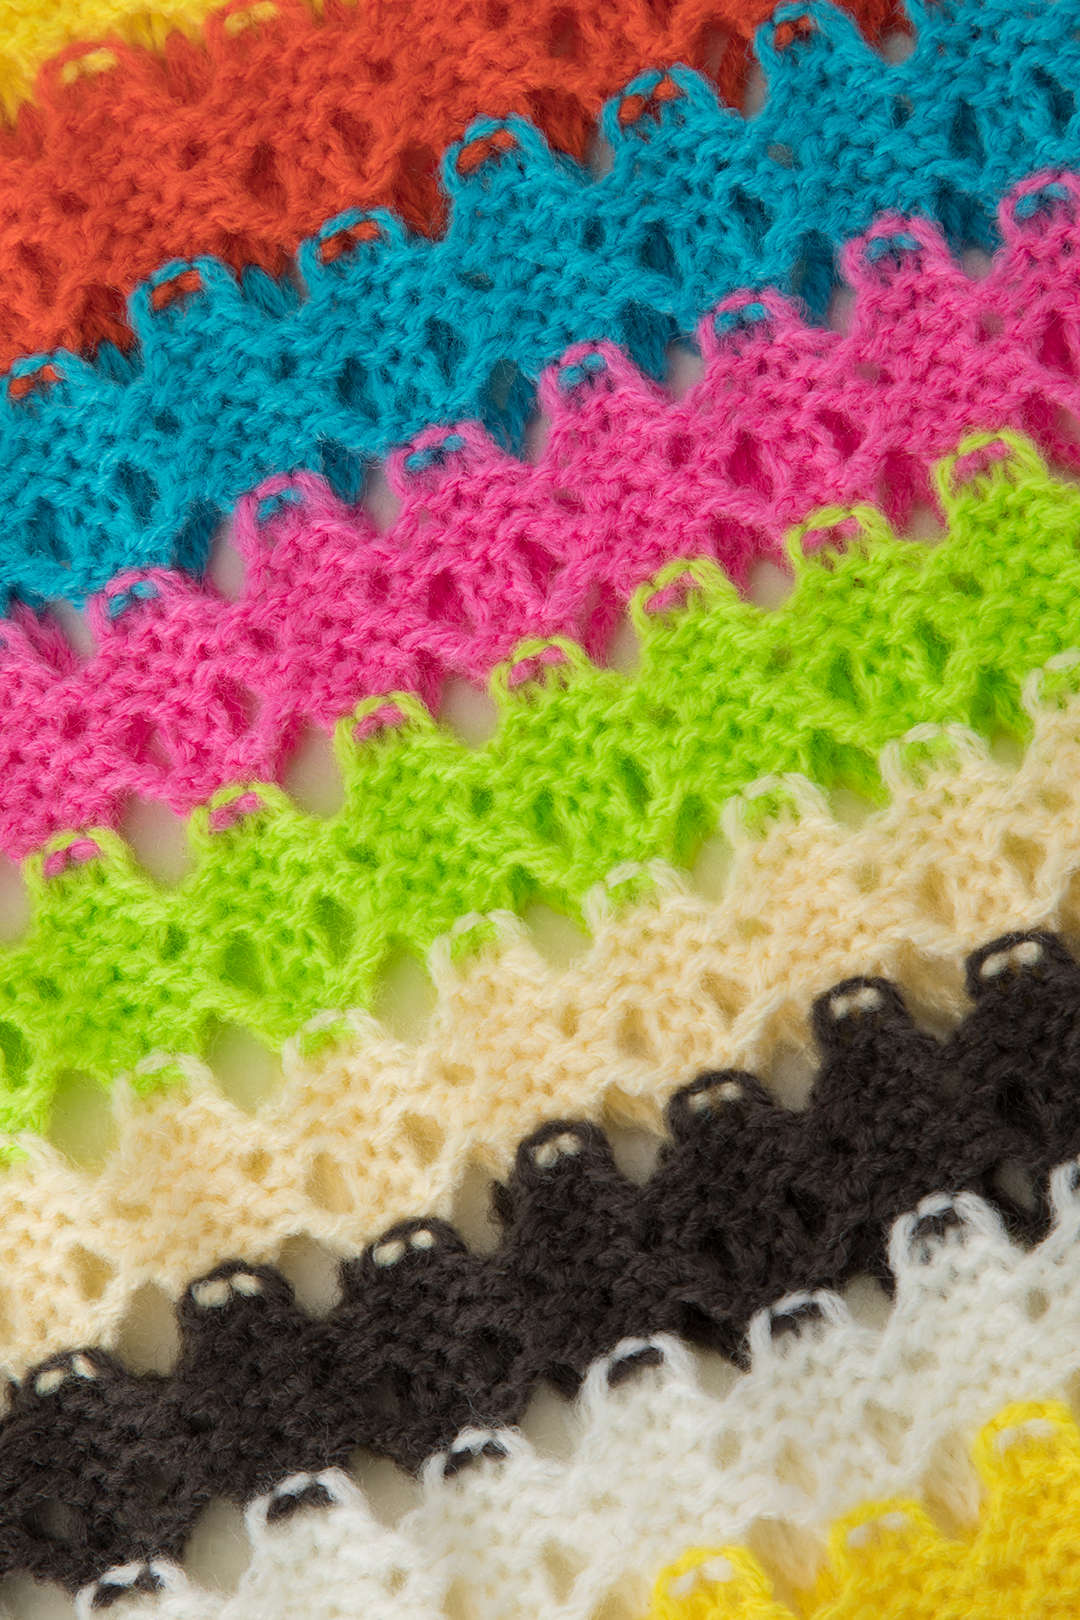 Rainbow Crochet Split Tassel Cover-Up Skirt